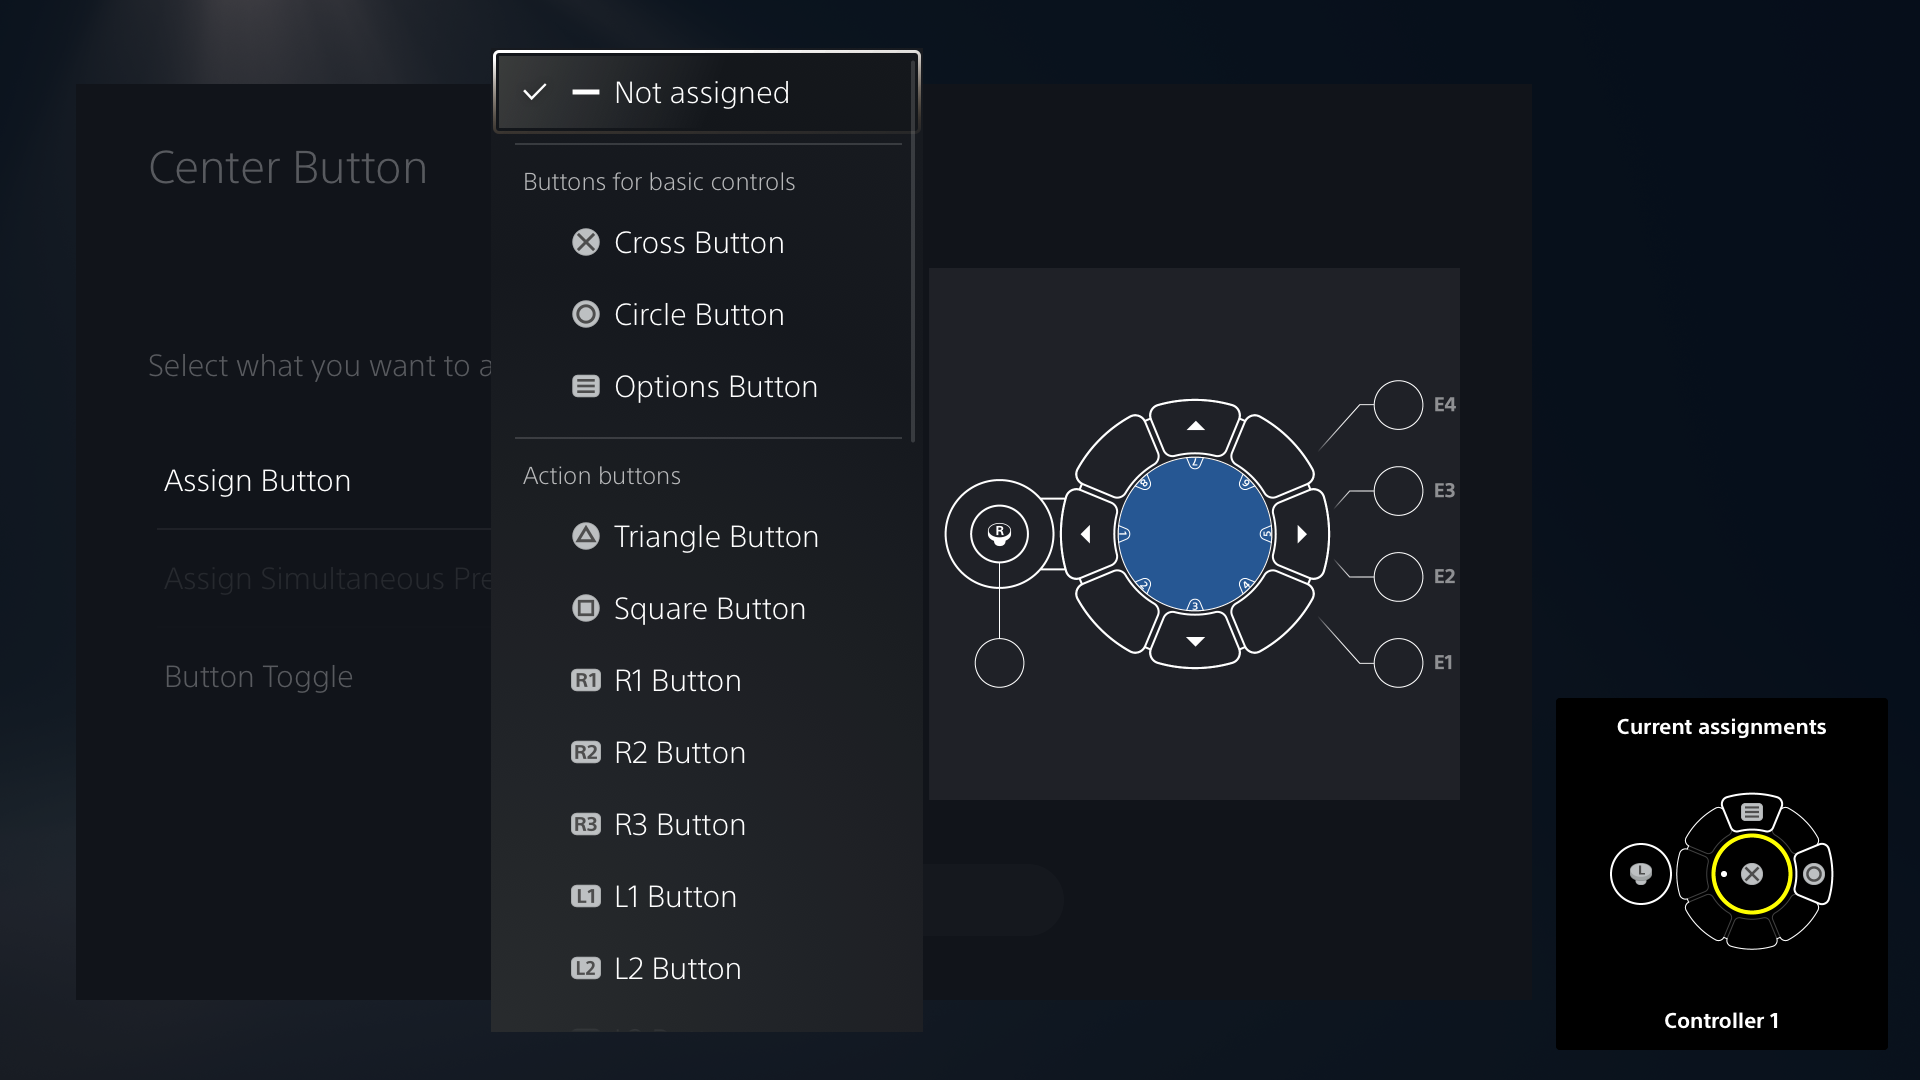  "Abbildung der Benutzeroberfläche des Access Controllers mit Auswahlmöglichkeiten für die Tastenbelegung"